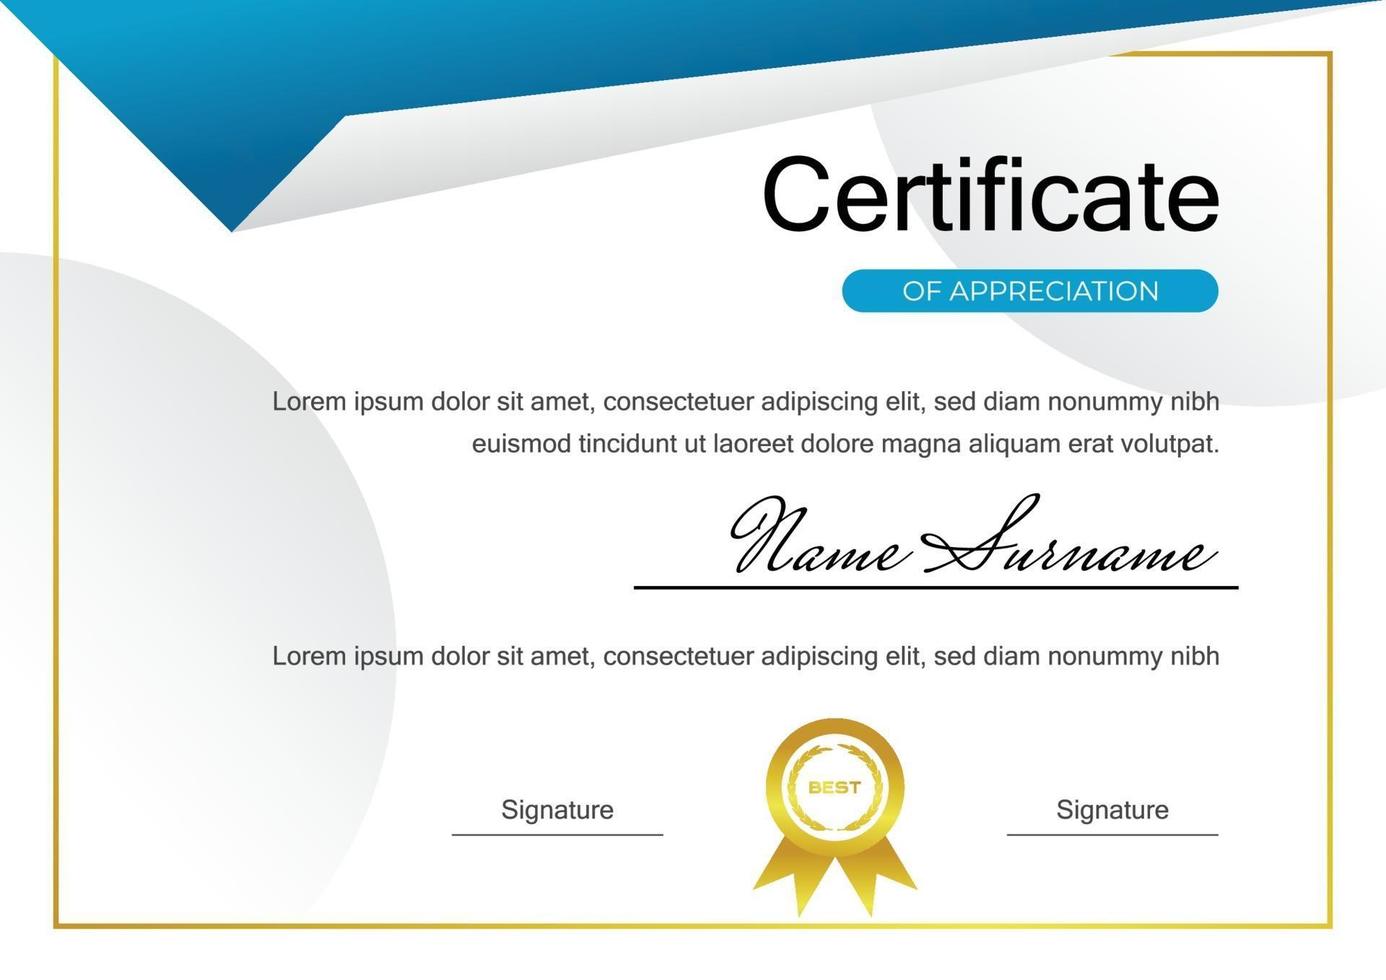 plantilla de diseño de certificado para el logro vector